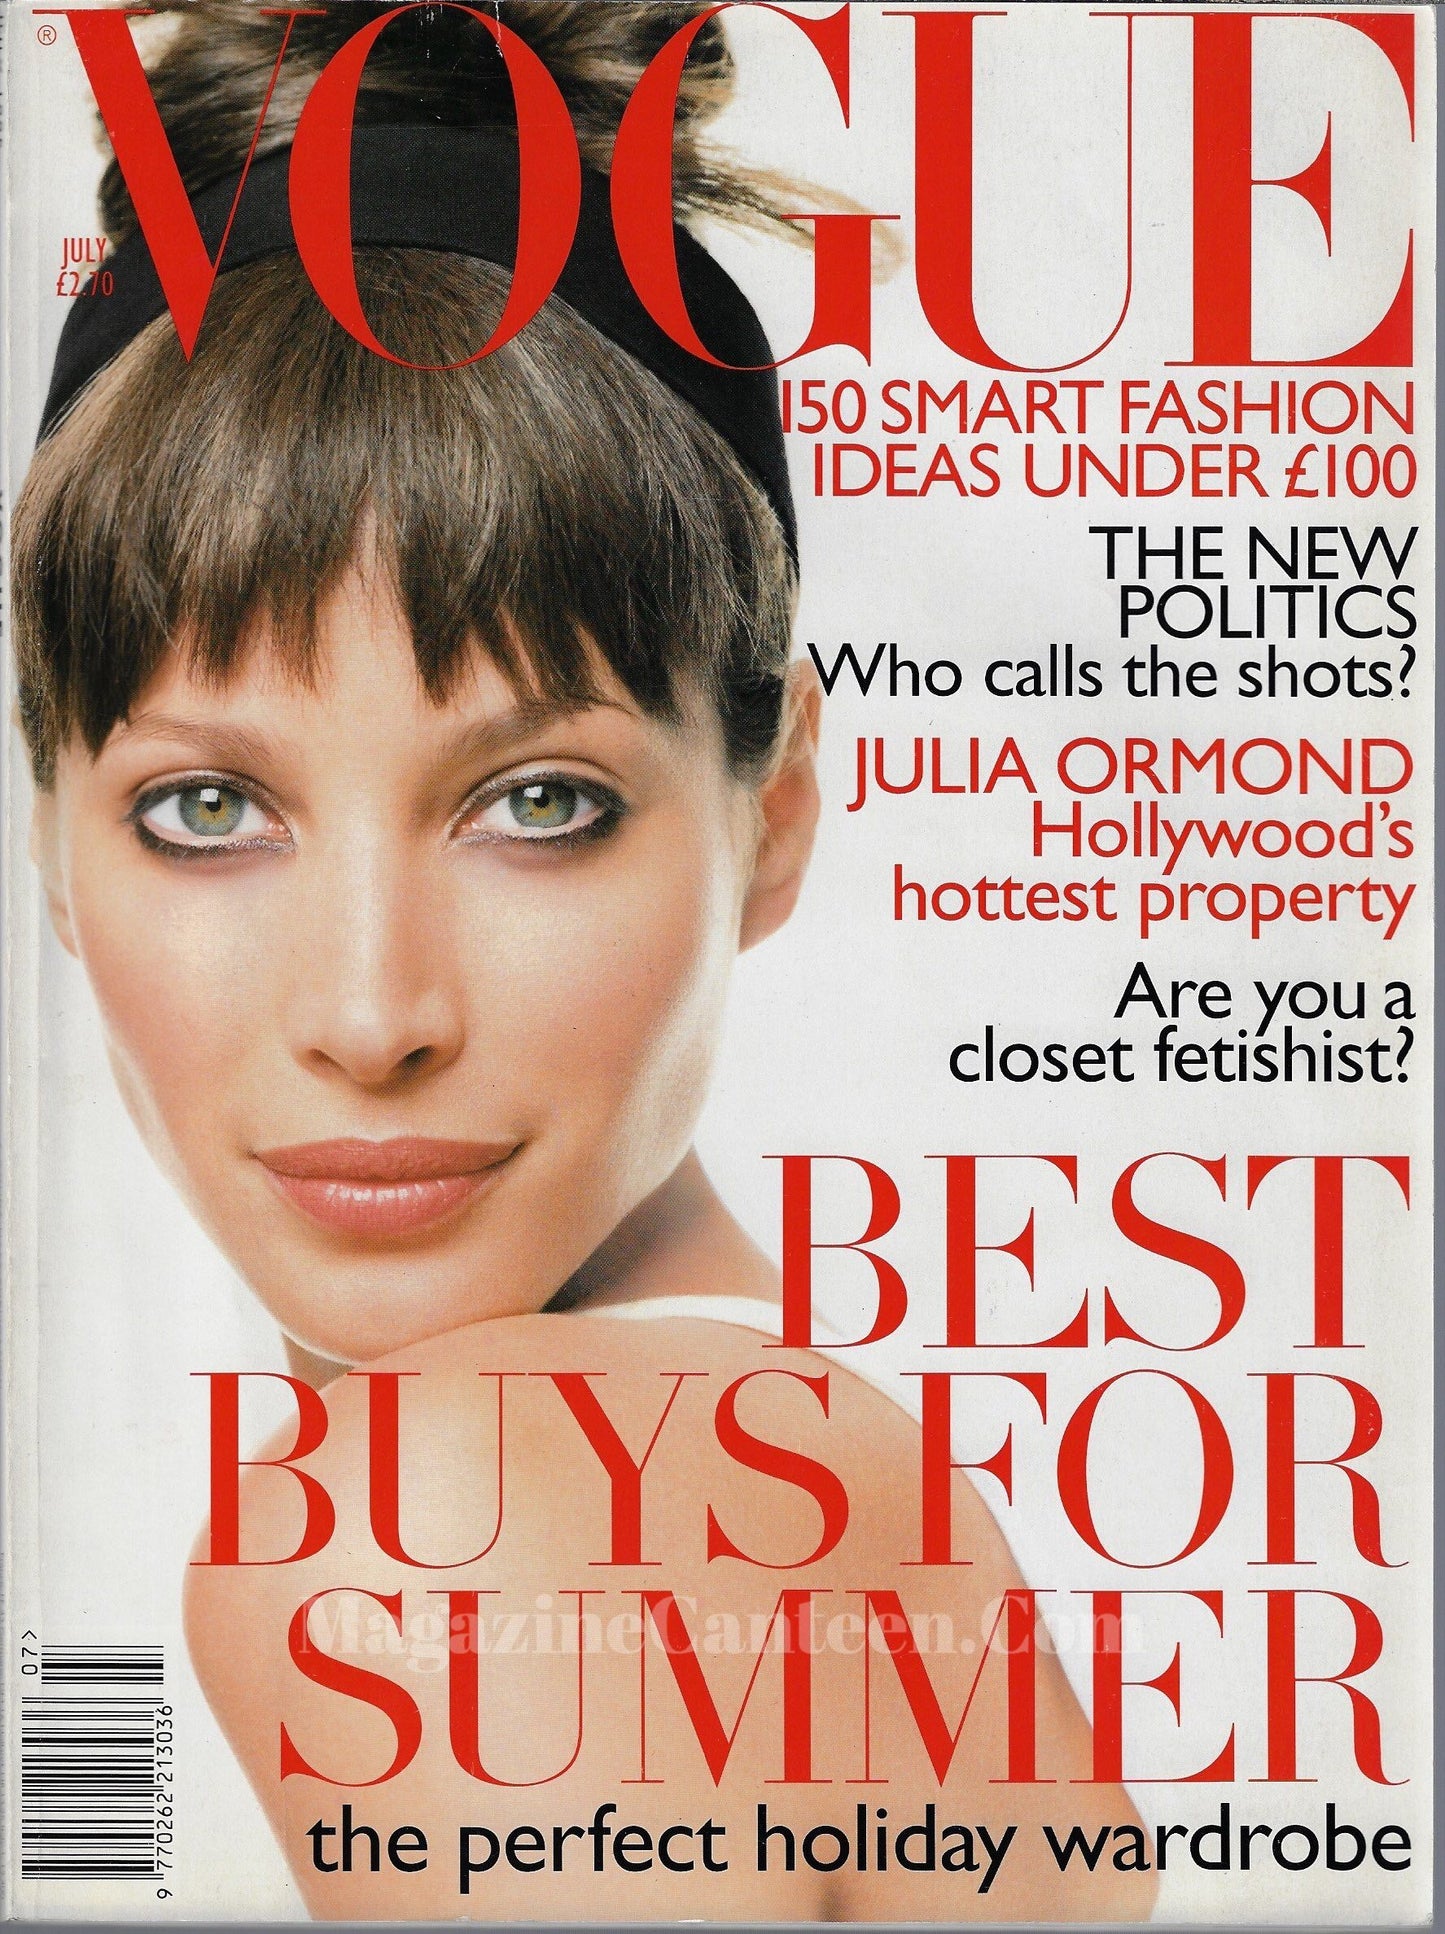 Vogue Magazine July 1995 - Christy Turlington